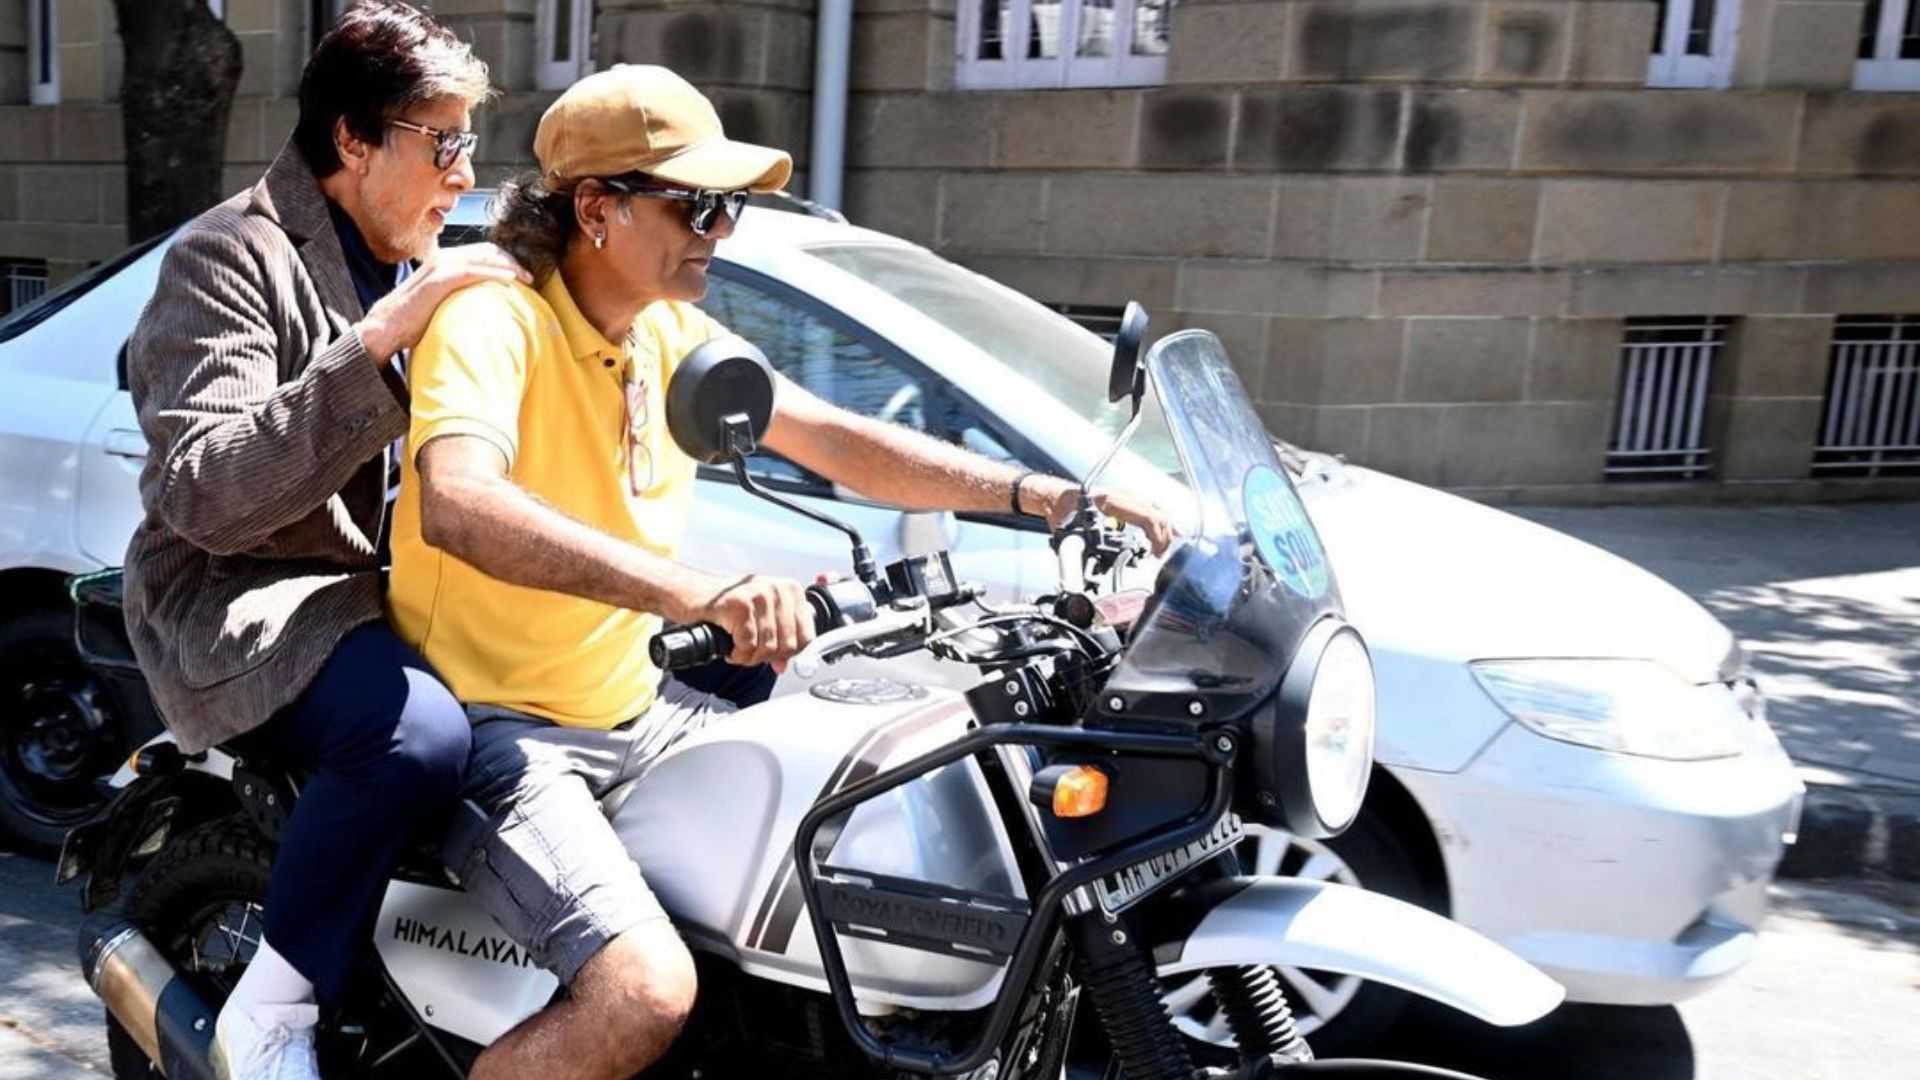 गाड़ी से उतरकर अमिताभ बच्चन एक अनजान की बाइक पर बैठे, कारण जीत लेगा दिल